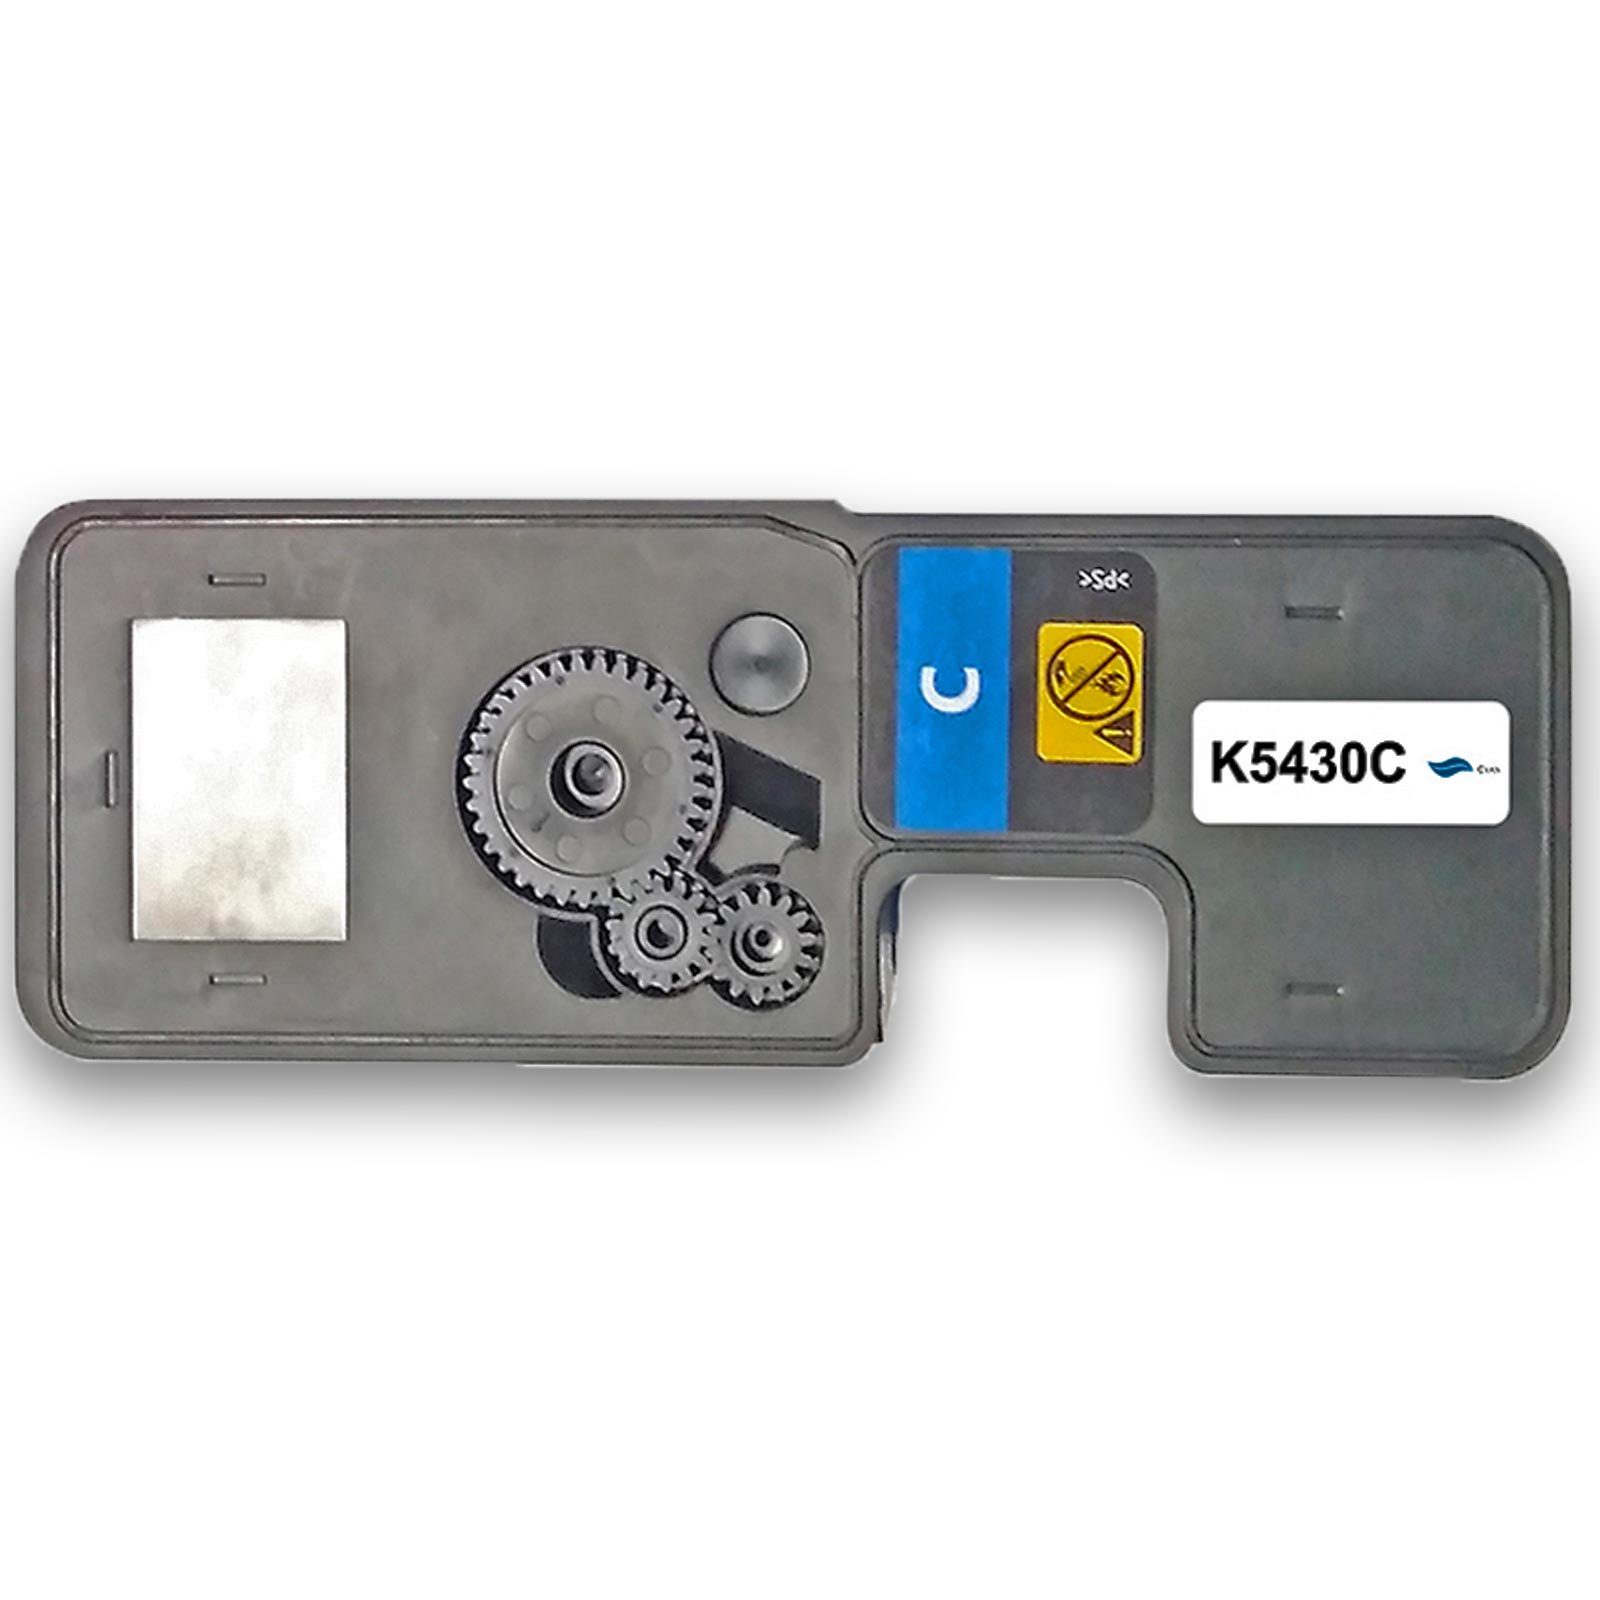 (Schwarz, Gigao Magenta Multipack Kompatibel Kyocera TK-5430 Cyan, 4-Farben Tonerkartusche